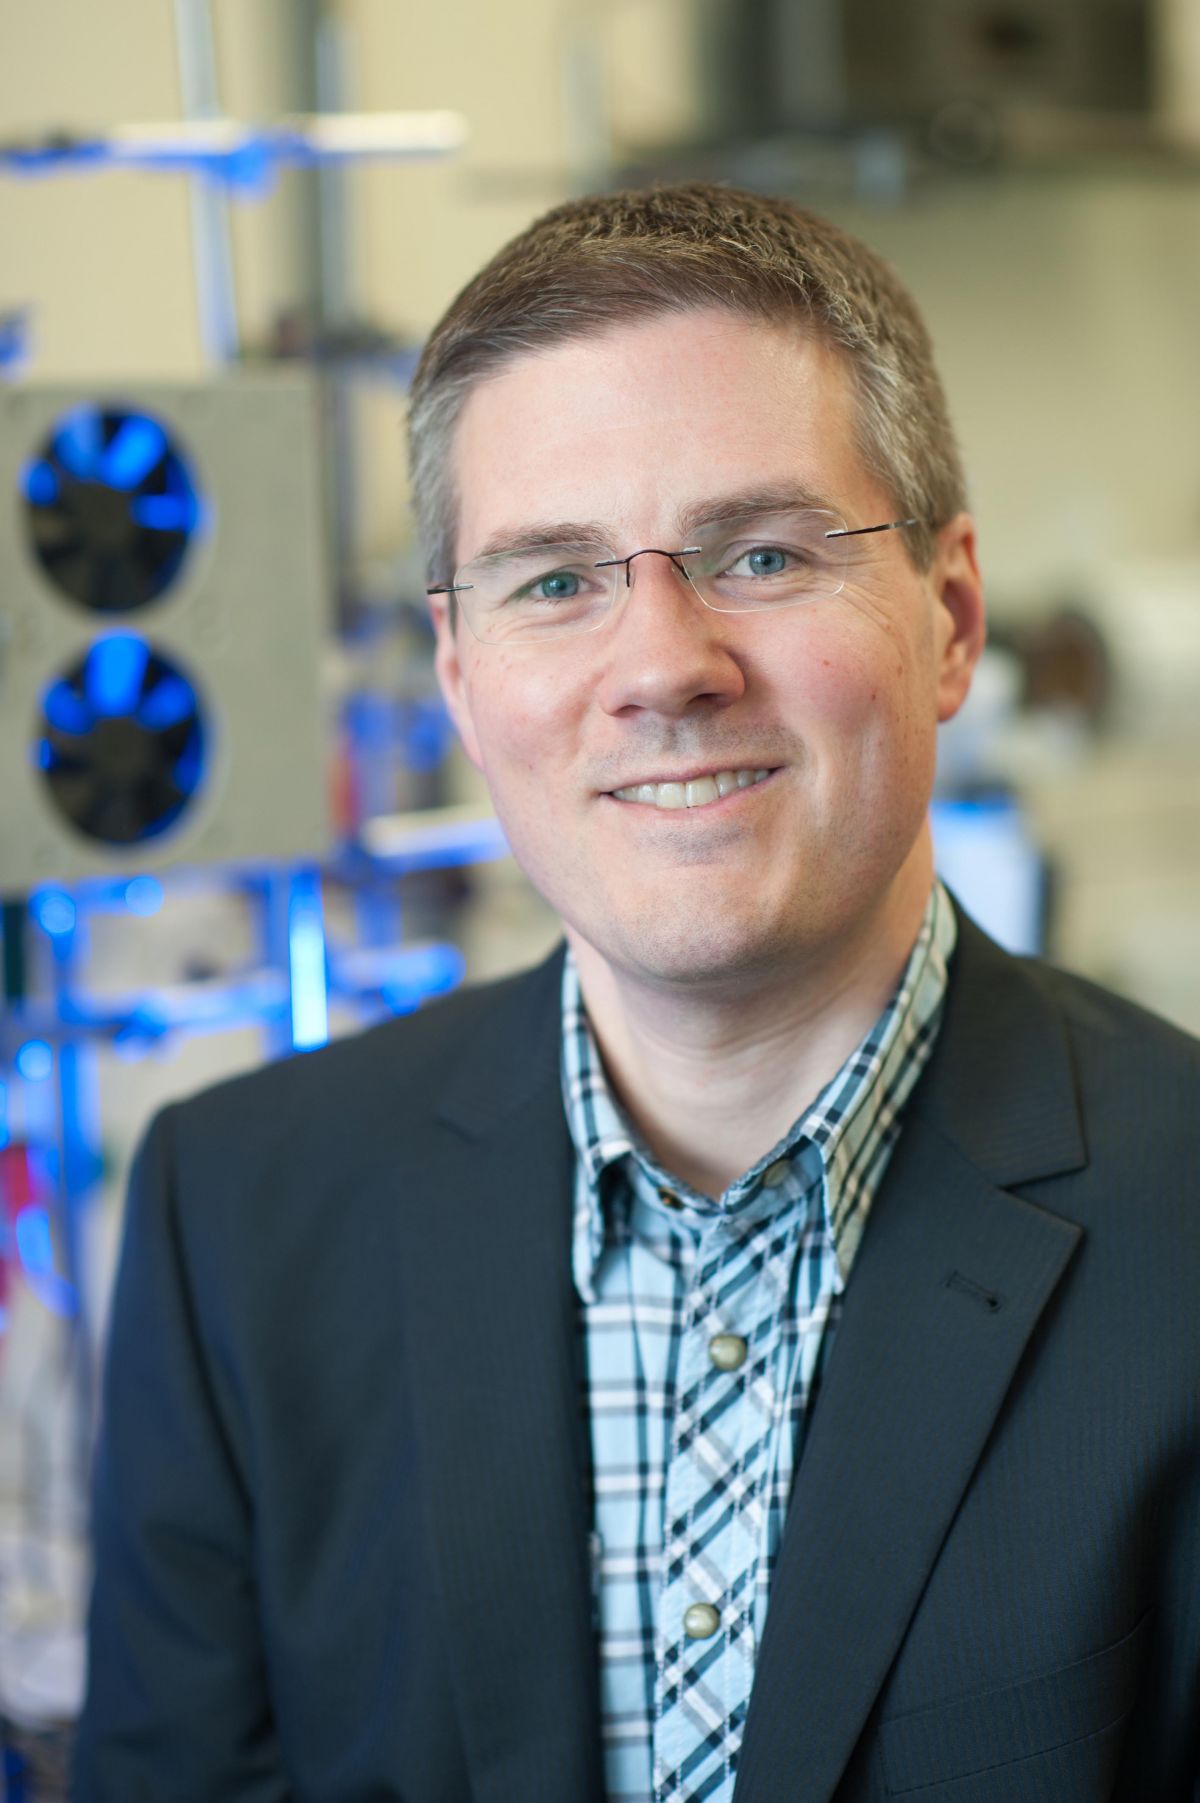 Prof. Carsten Streb forscht am Institut für Angewandte Chemie der Univeristät Ulm an Möglichkeiten, die natürliche Photosynthese technisch nachzubilden.